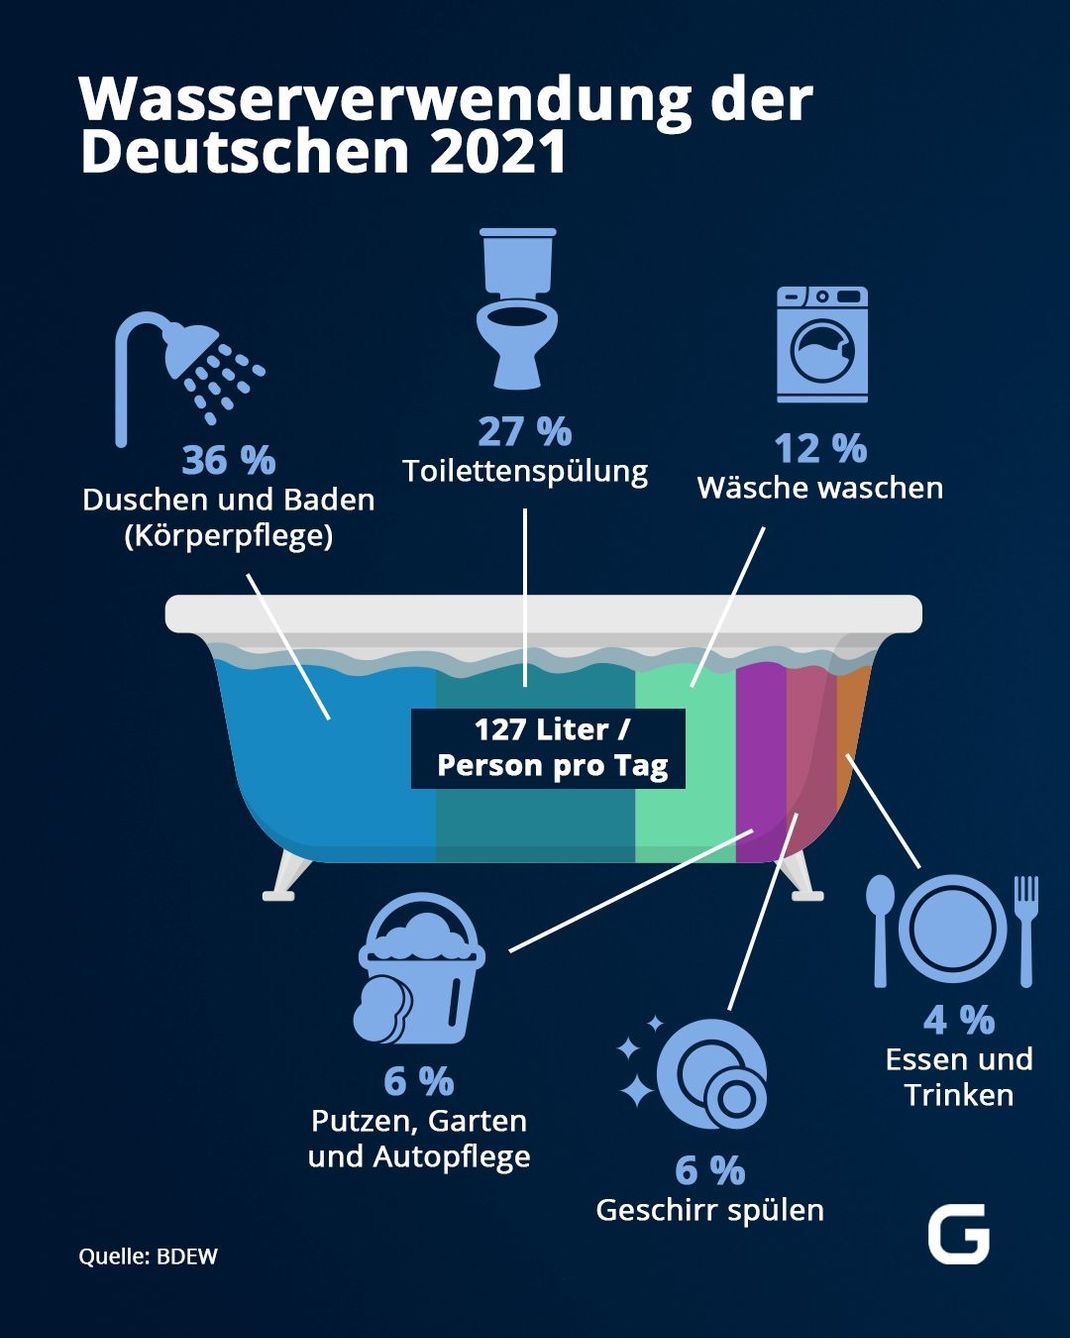 Prozentualer Wasserverbrauch der Deutschen pro Person und Tag